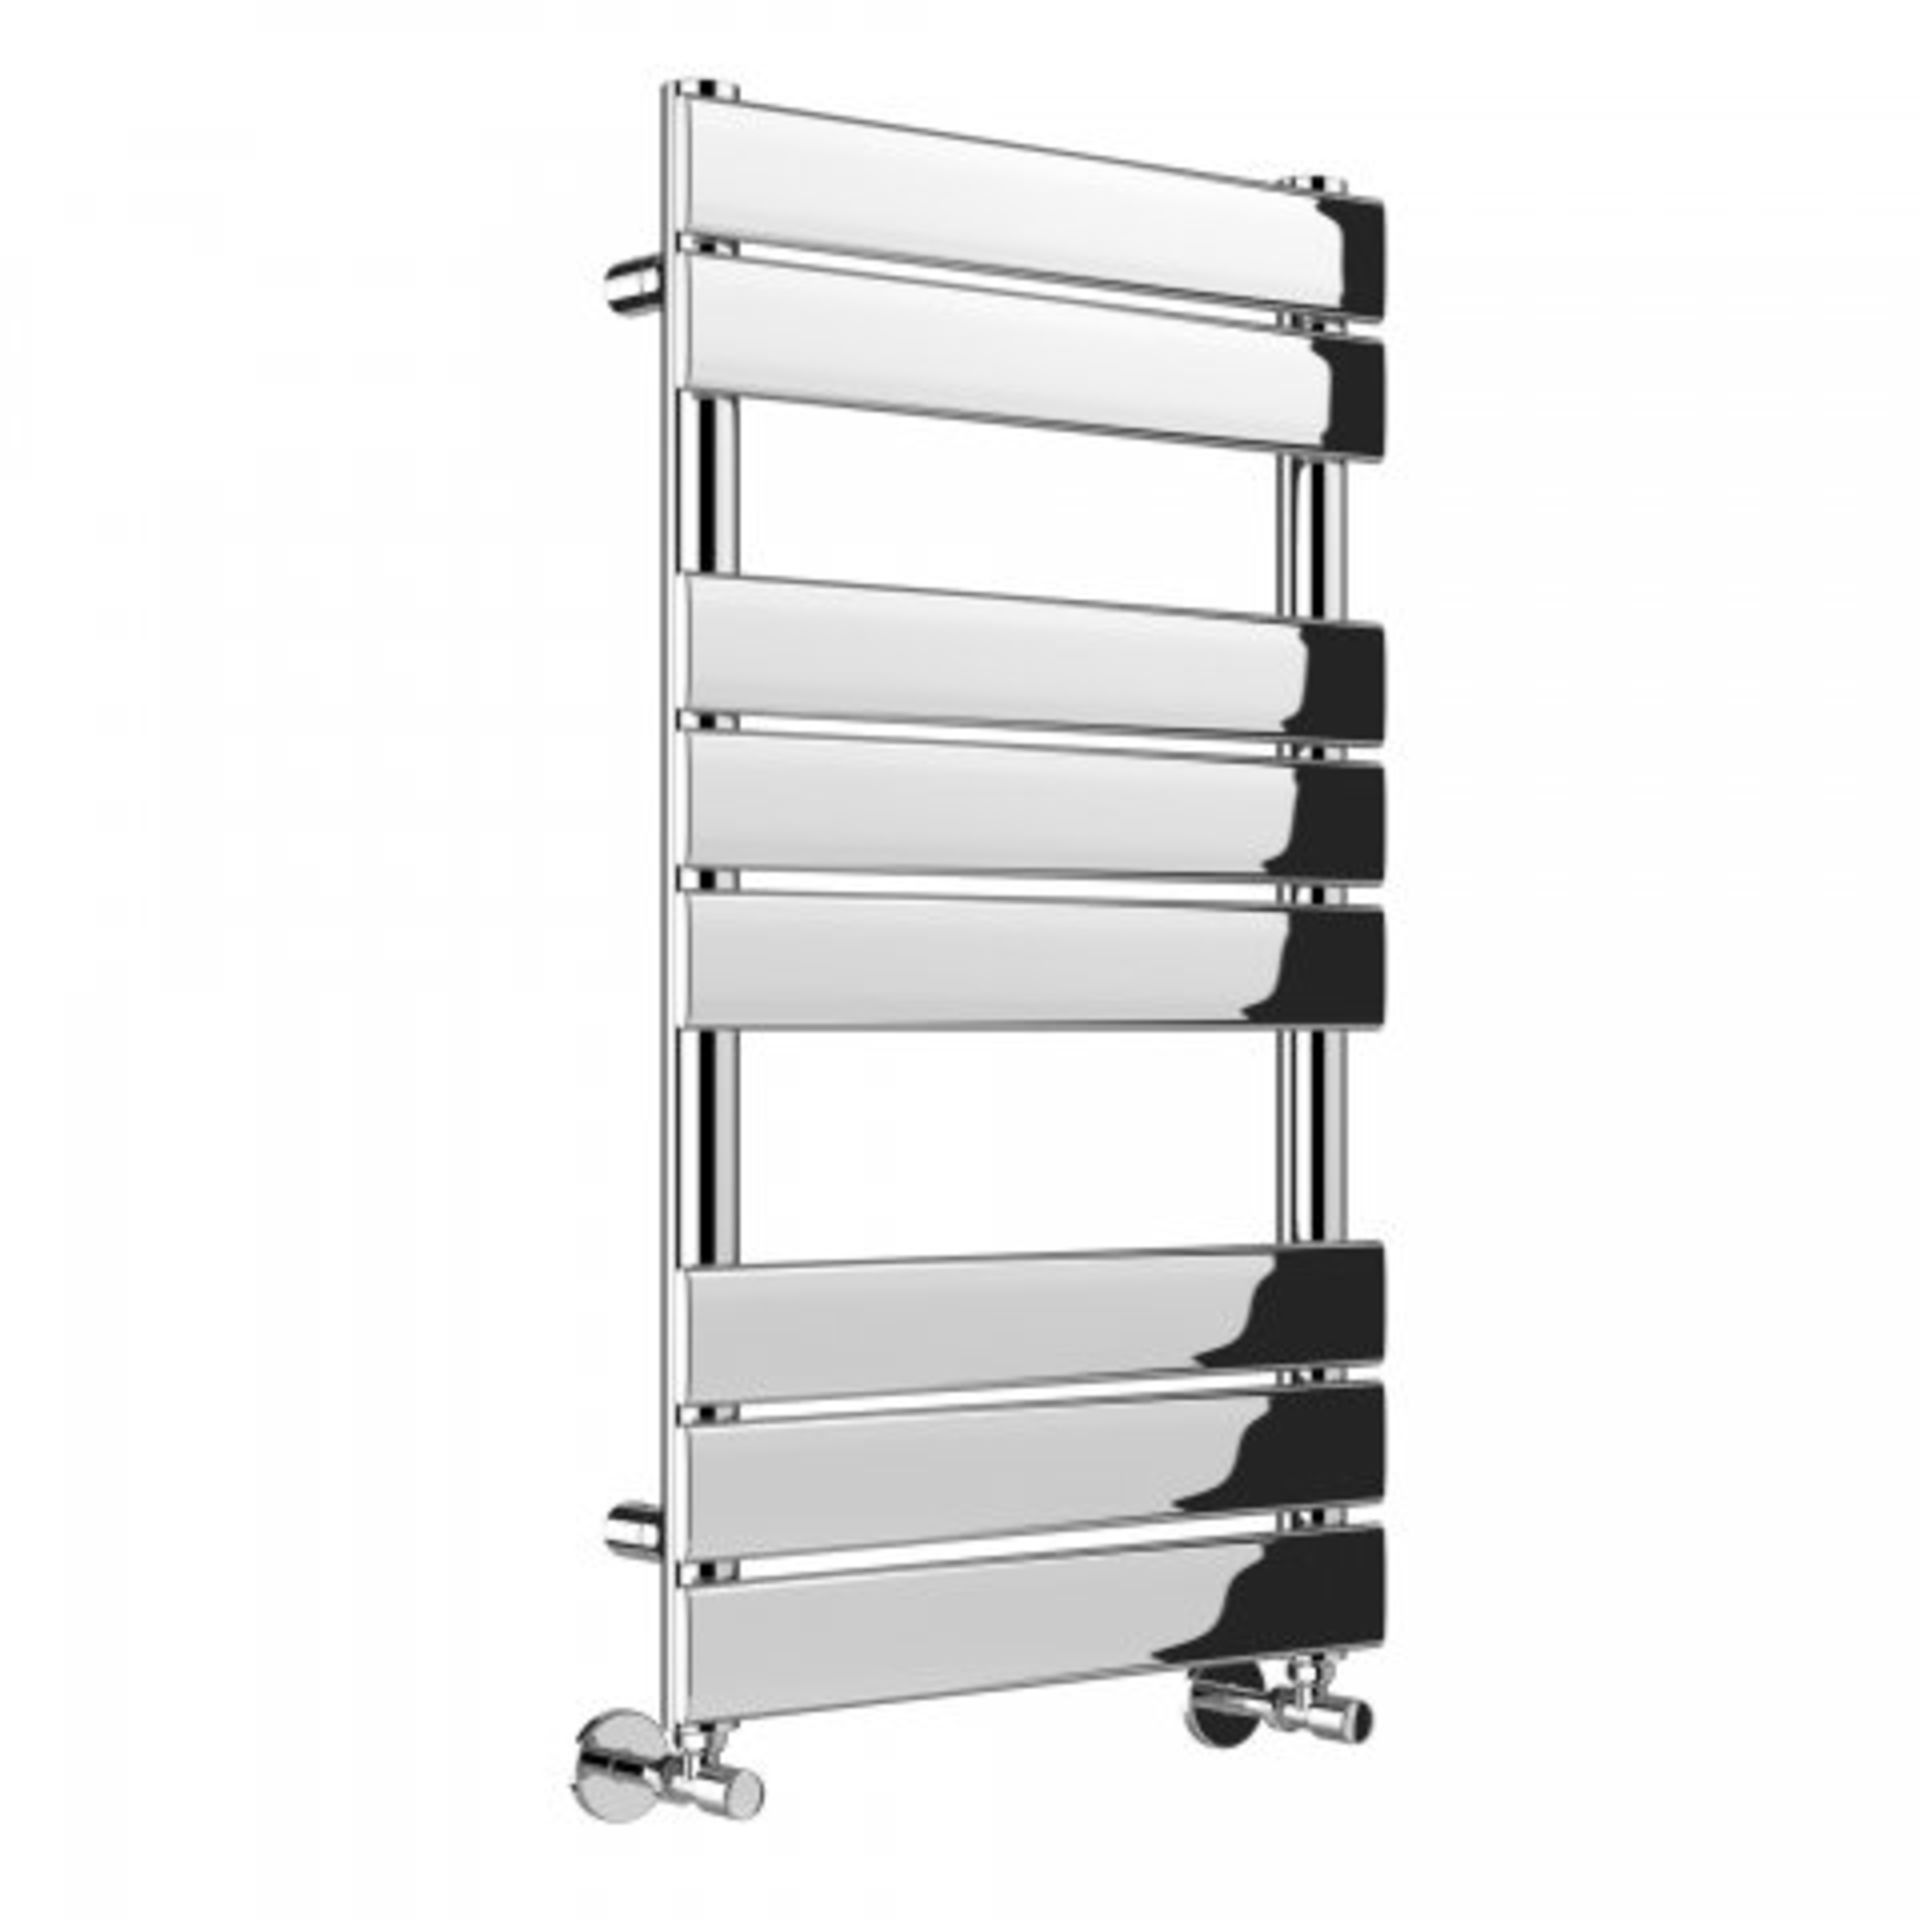 (8) 800x450mm Chrome Flat Panel Ladder Towel Radiator - Francis Range. RRP £246.99. Stylishly - Image 2 of 4